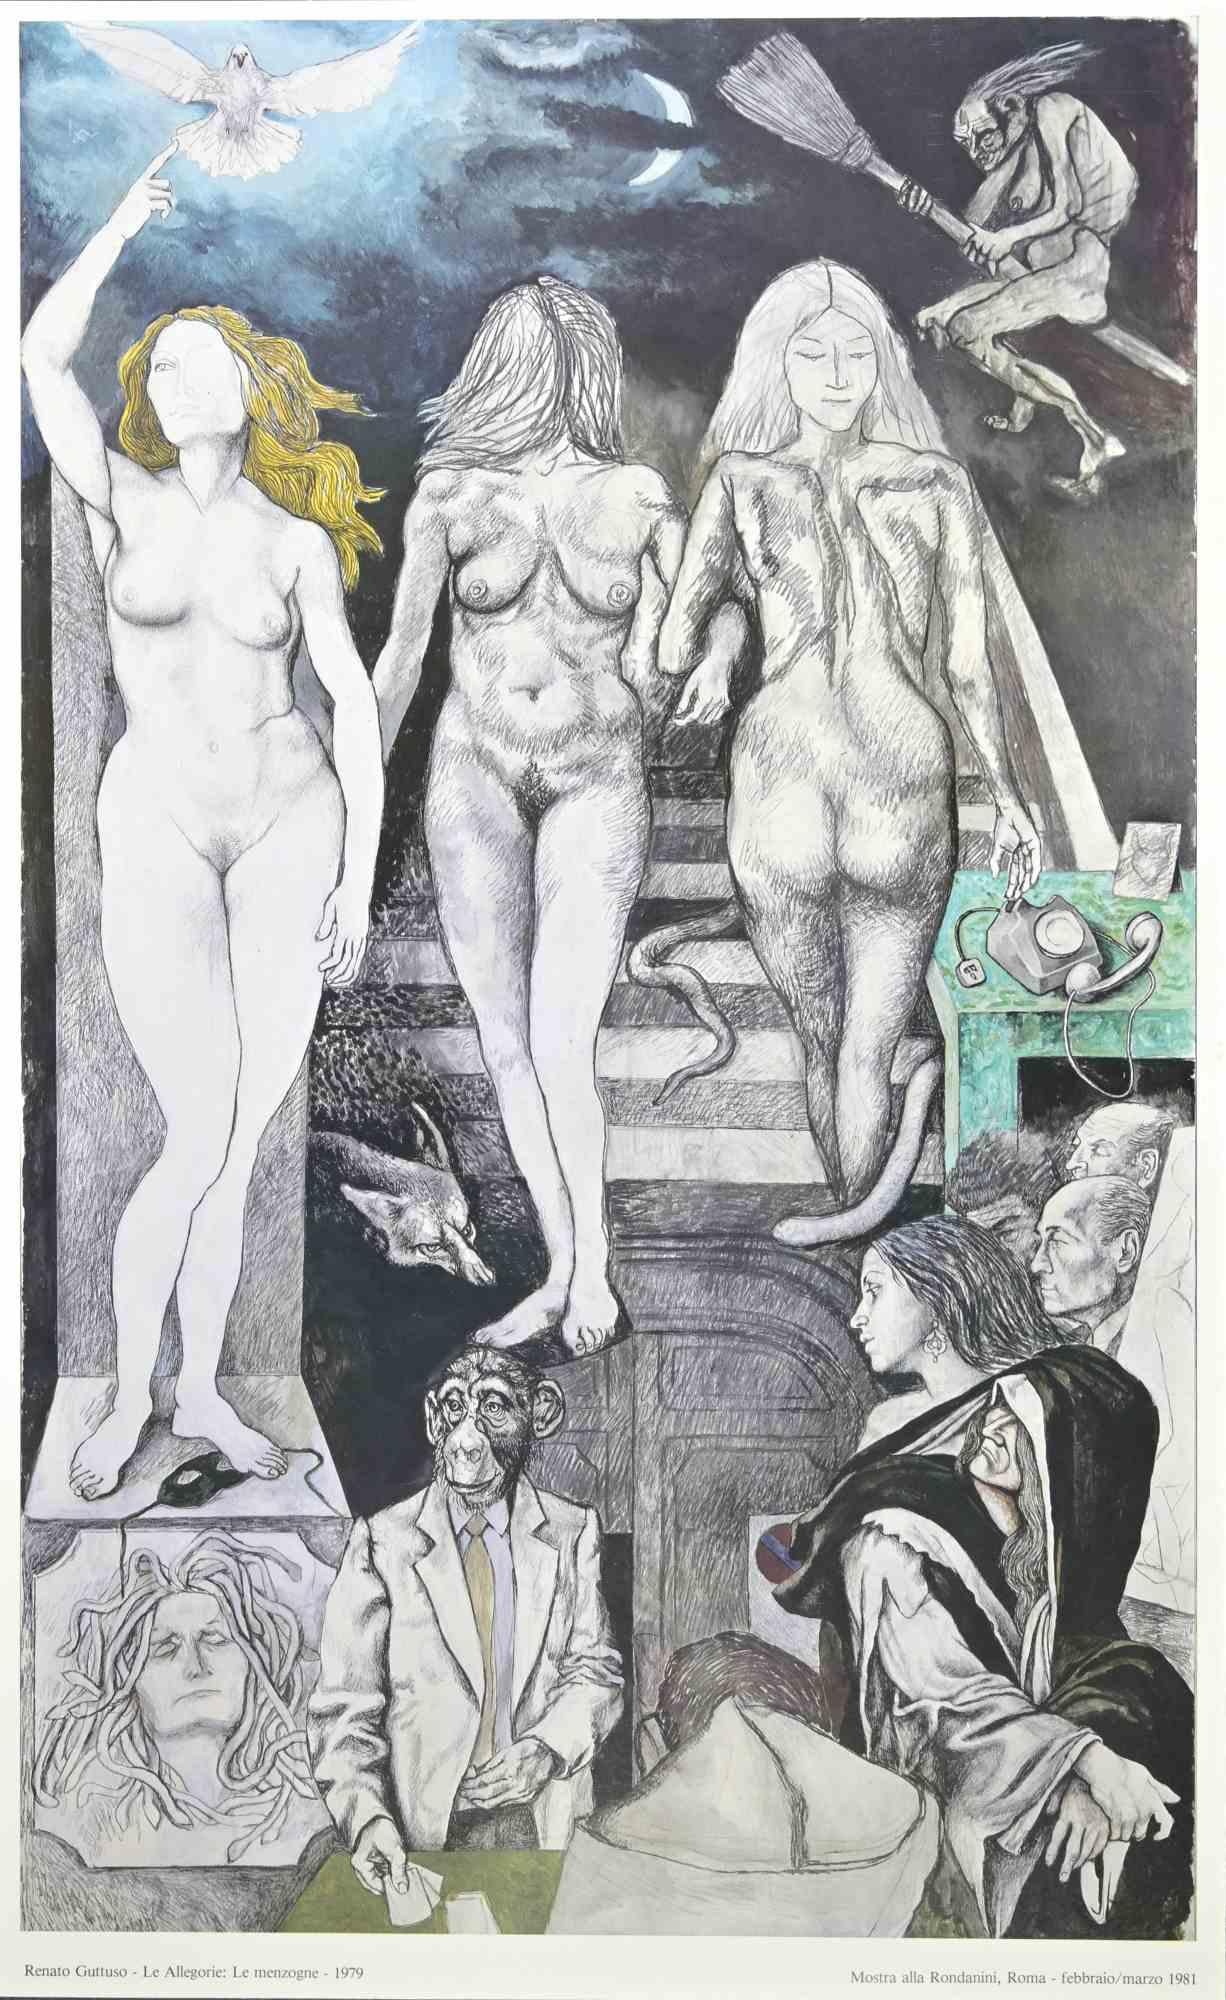 Allégories : Lies est une affiche vintage réalisée par l'artiste italien.  Renato Guttuso  (Bagheria, 1911 - Rome, 1987) en  1981.

Offset coloré sur papier. 

L'œuvre a été réalisée à l'occasion de l'exposition réalisée en 1981 à la Galleria